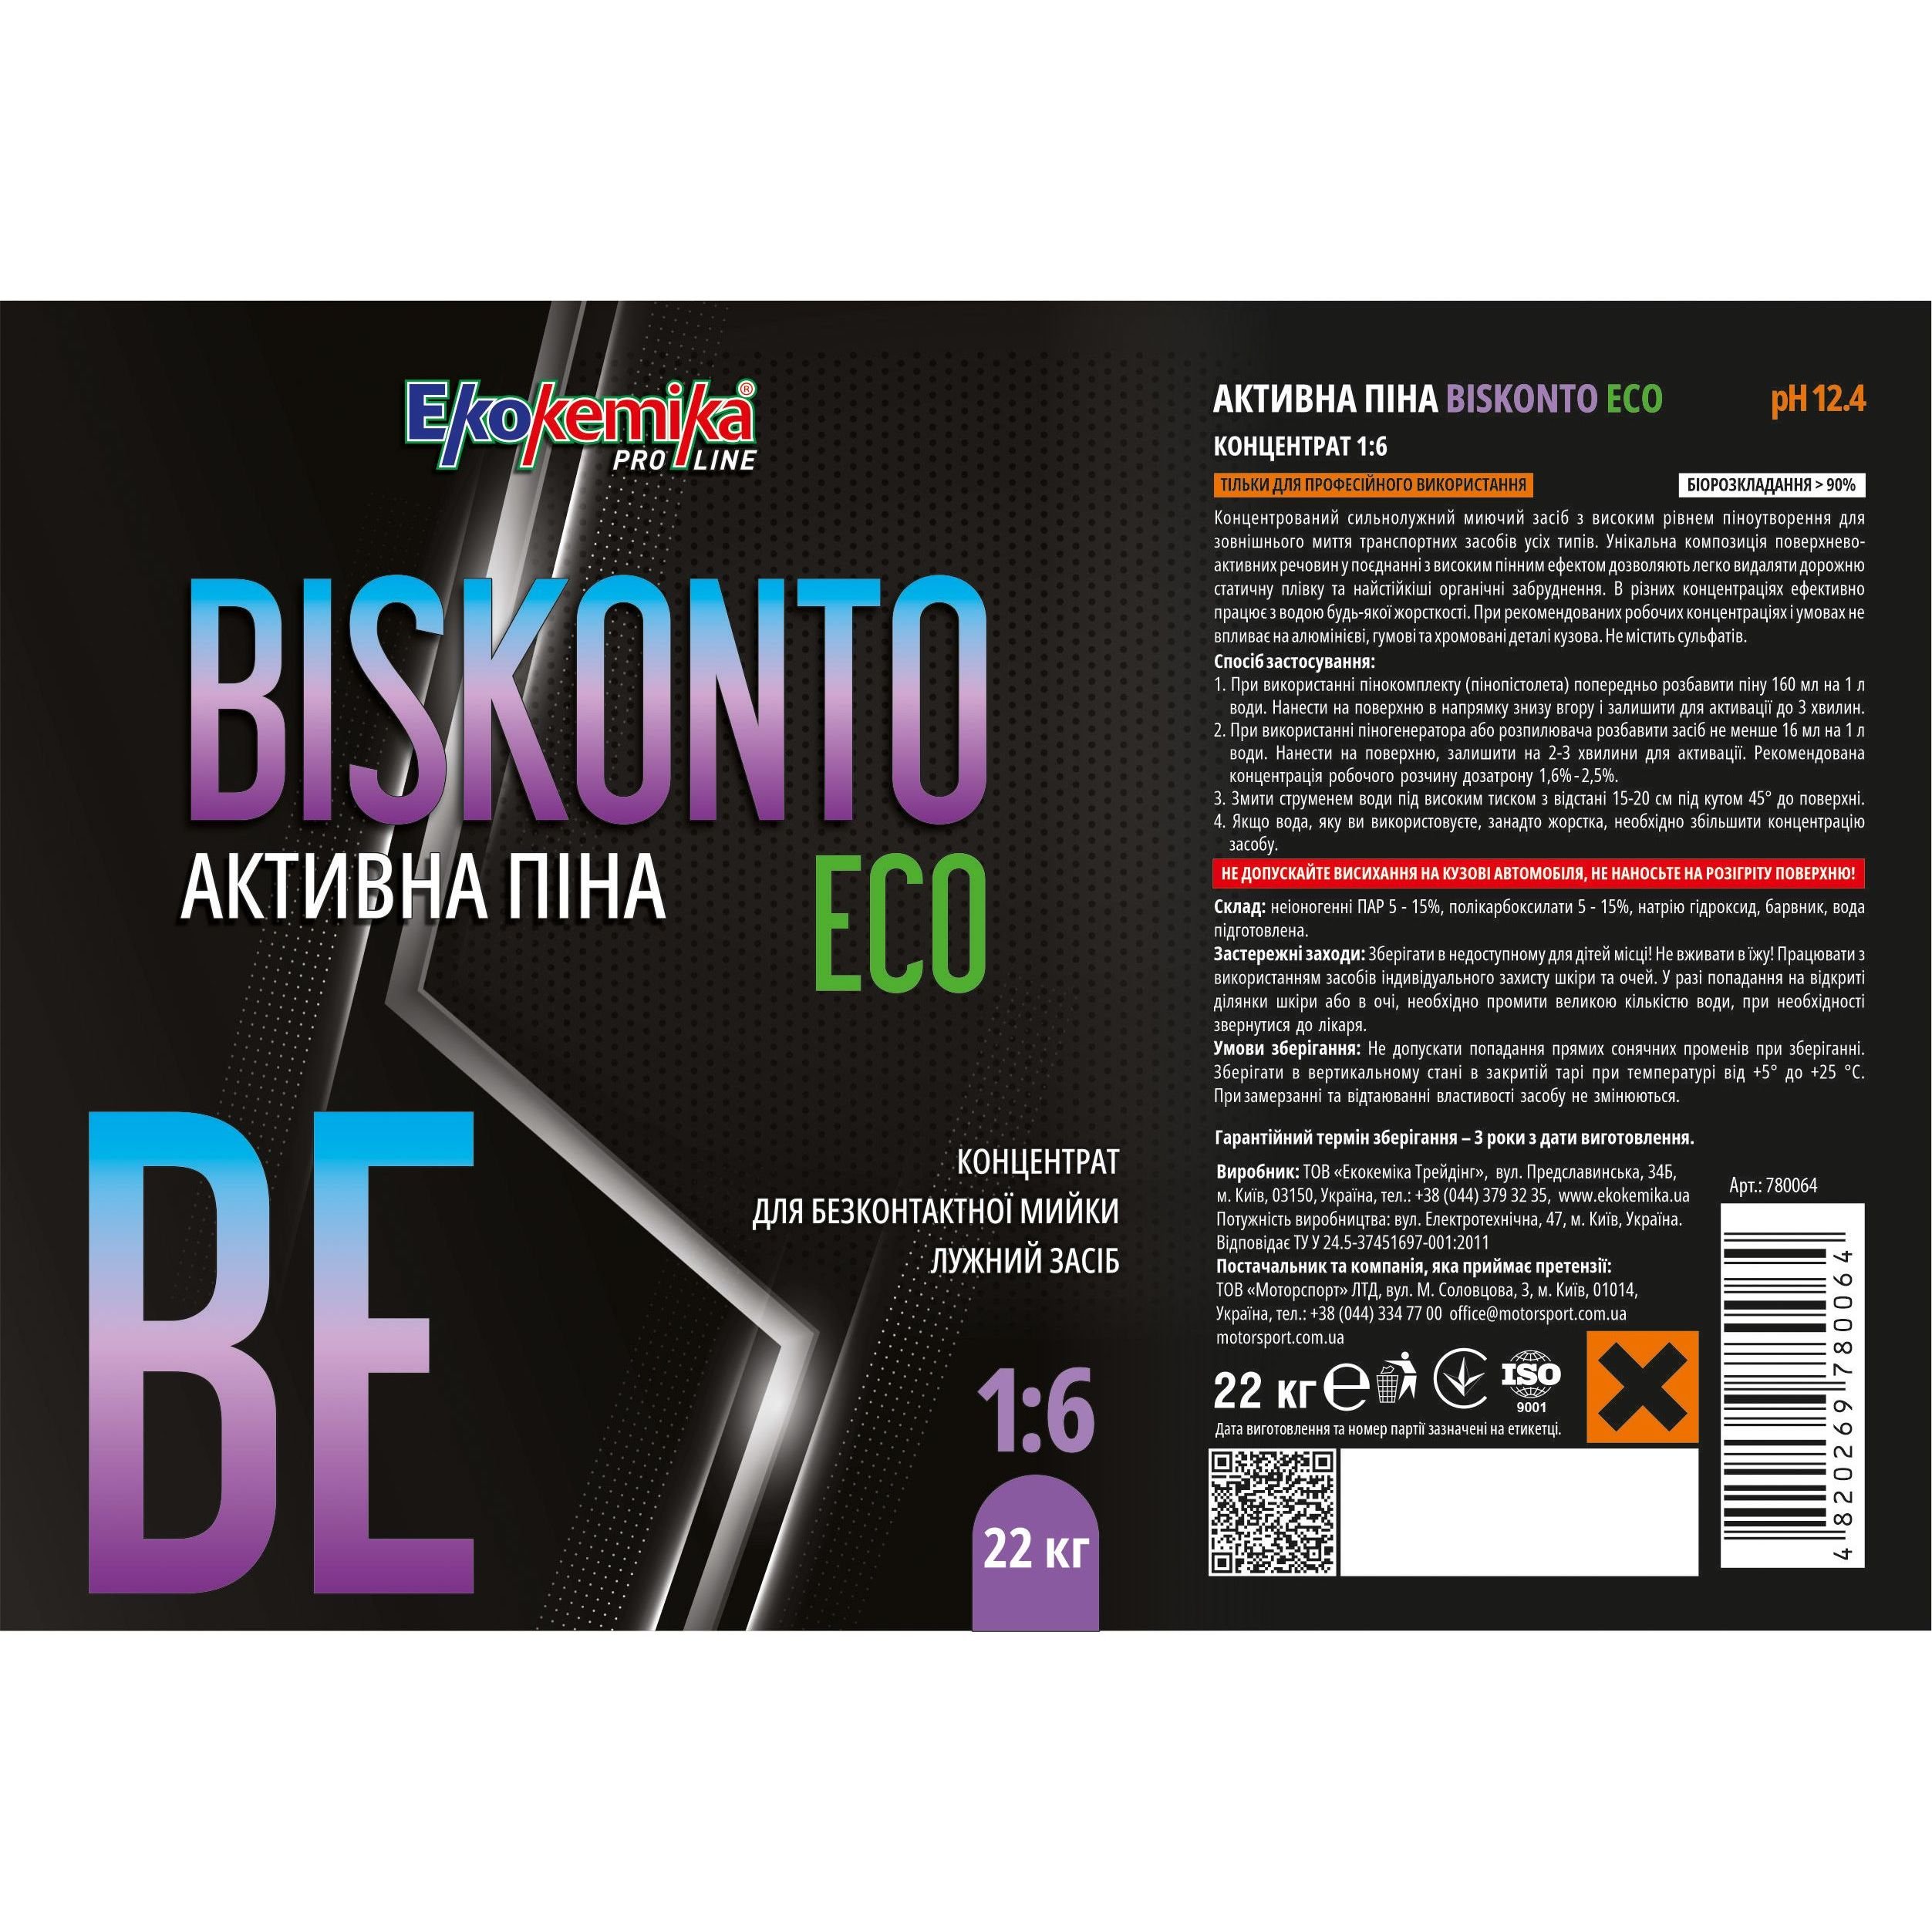 Активна піна Ekokemika Pro Line Biskonto Eco 1:6, 22 кг (780064) - фото 2